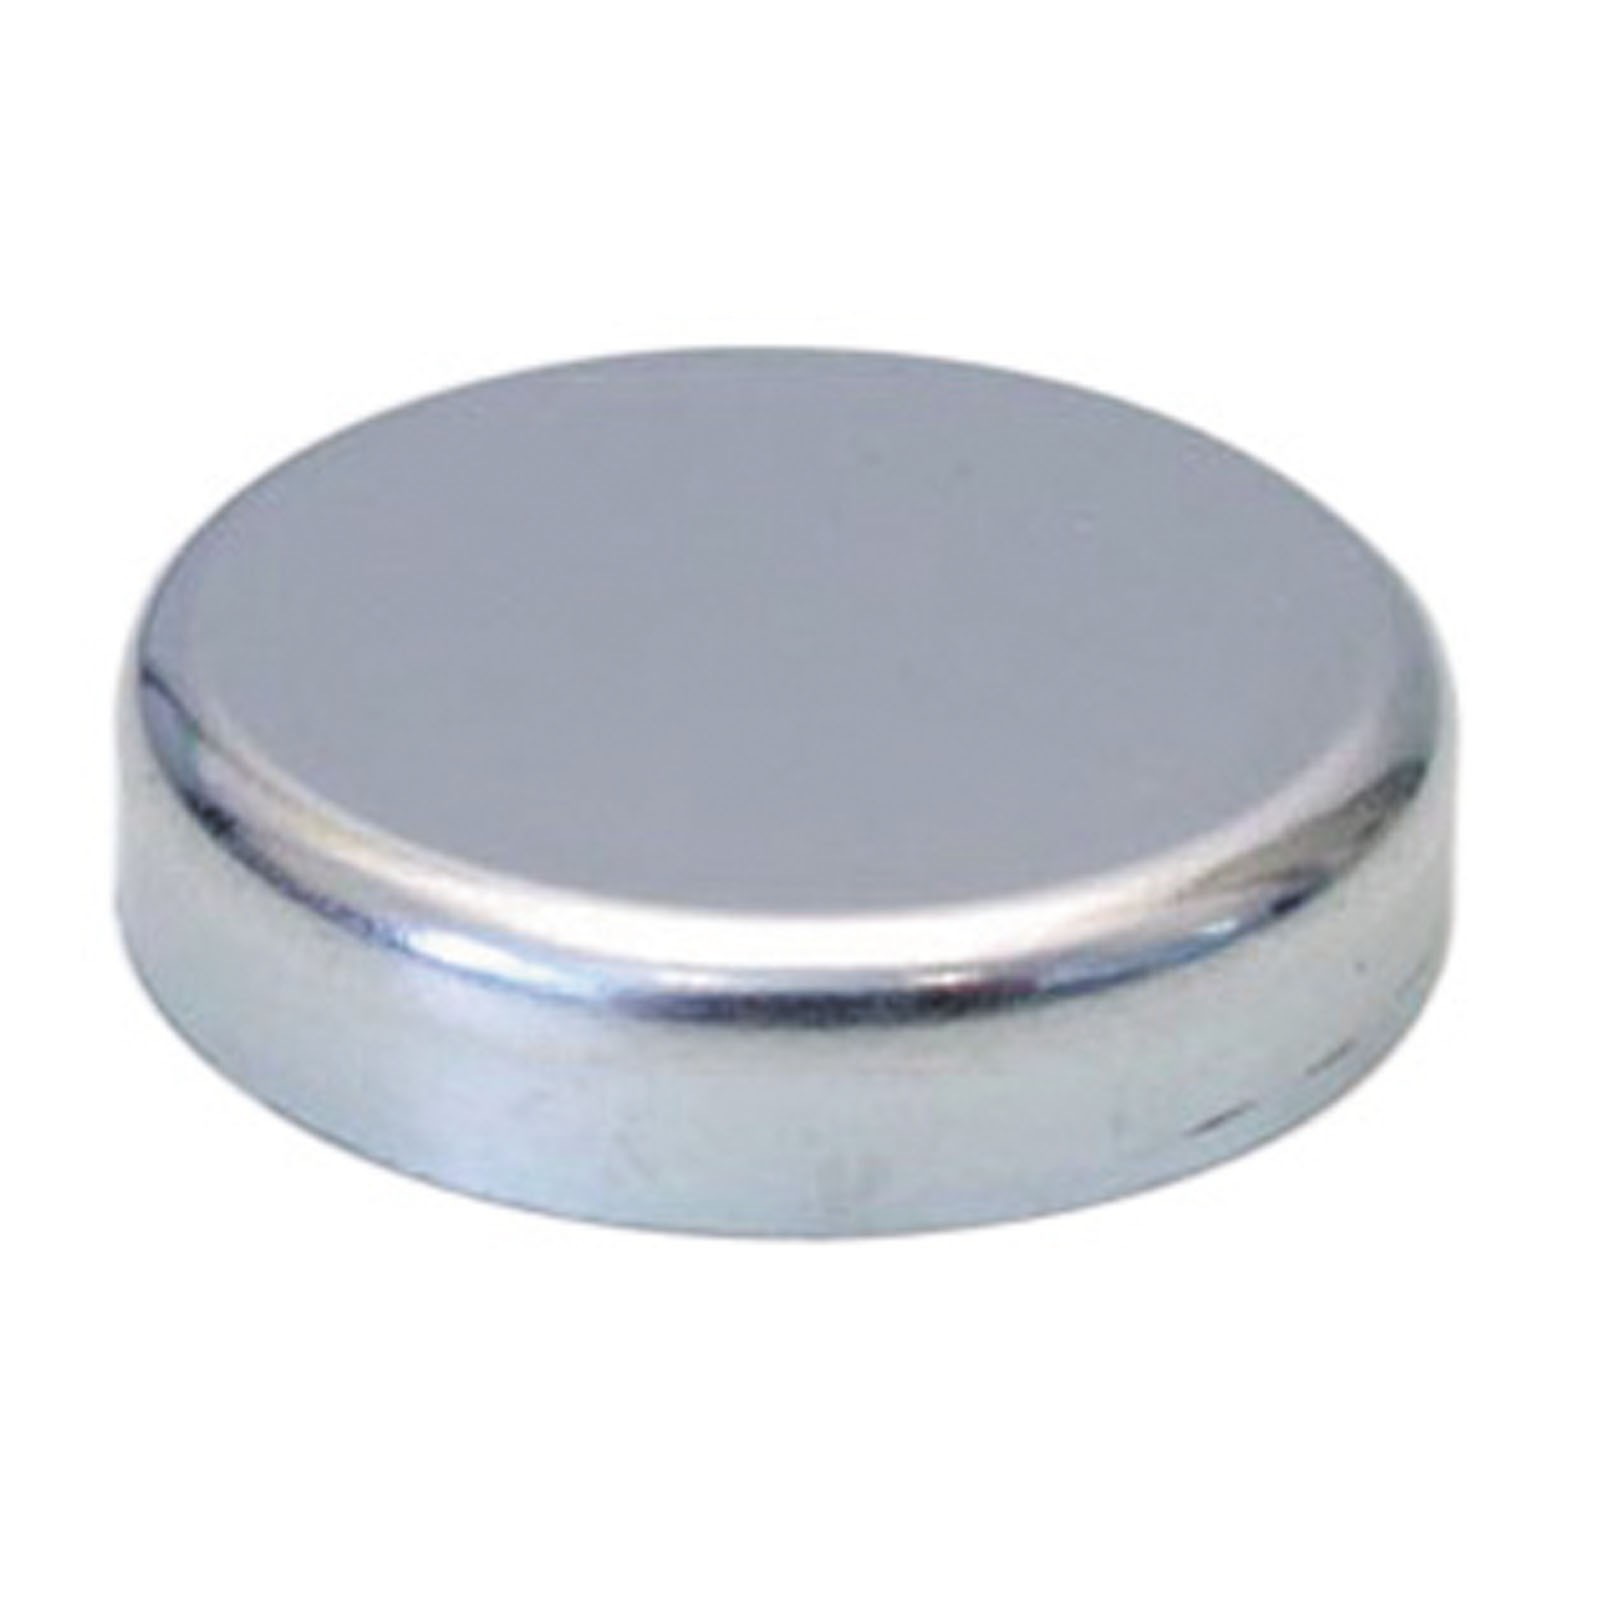 Flachgreifer Magnet Neodym Magnetfuß Oxit Hartferrit div Größen bis 125mm 1300 N Größe:32.0 mm von Rimag